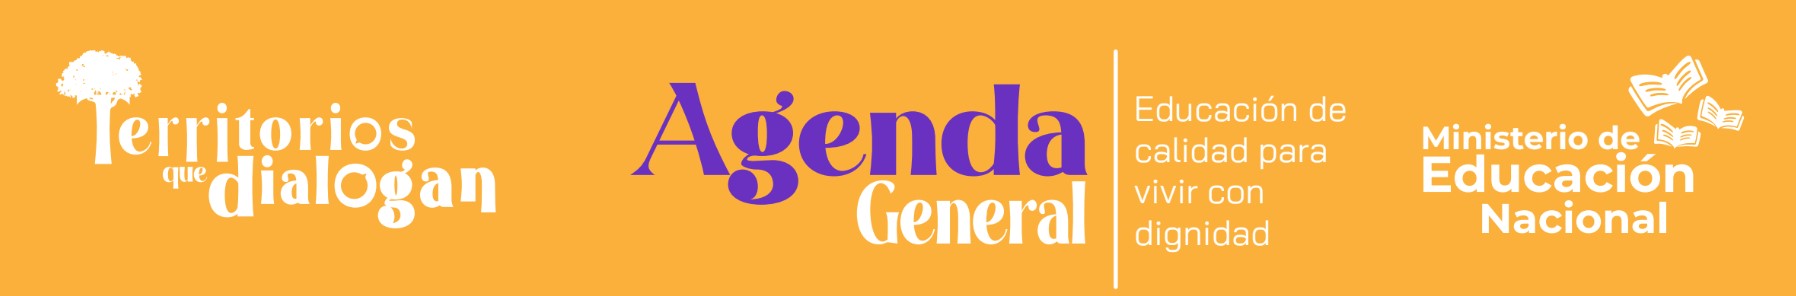 Territorios que dialogan  Agenda General